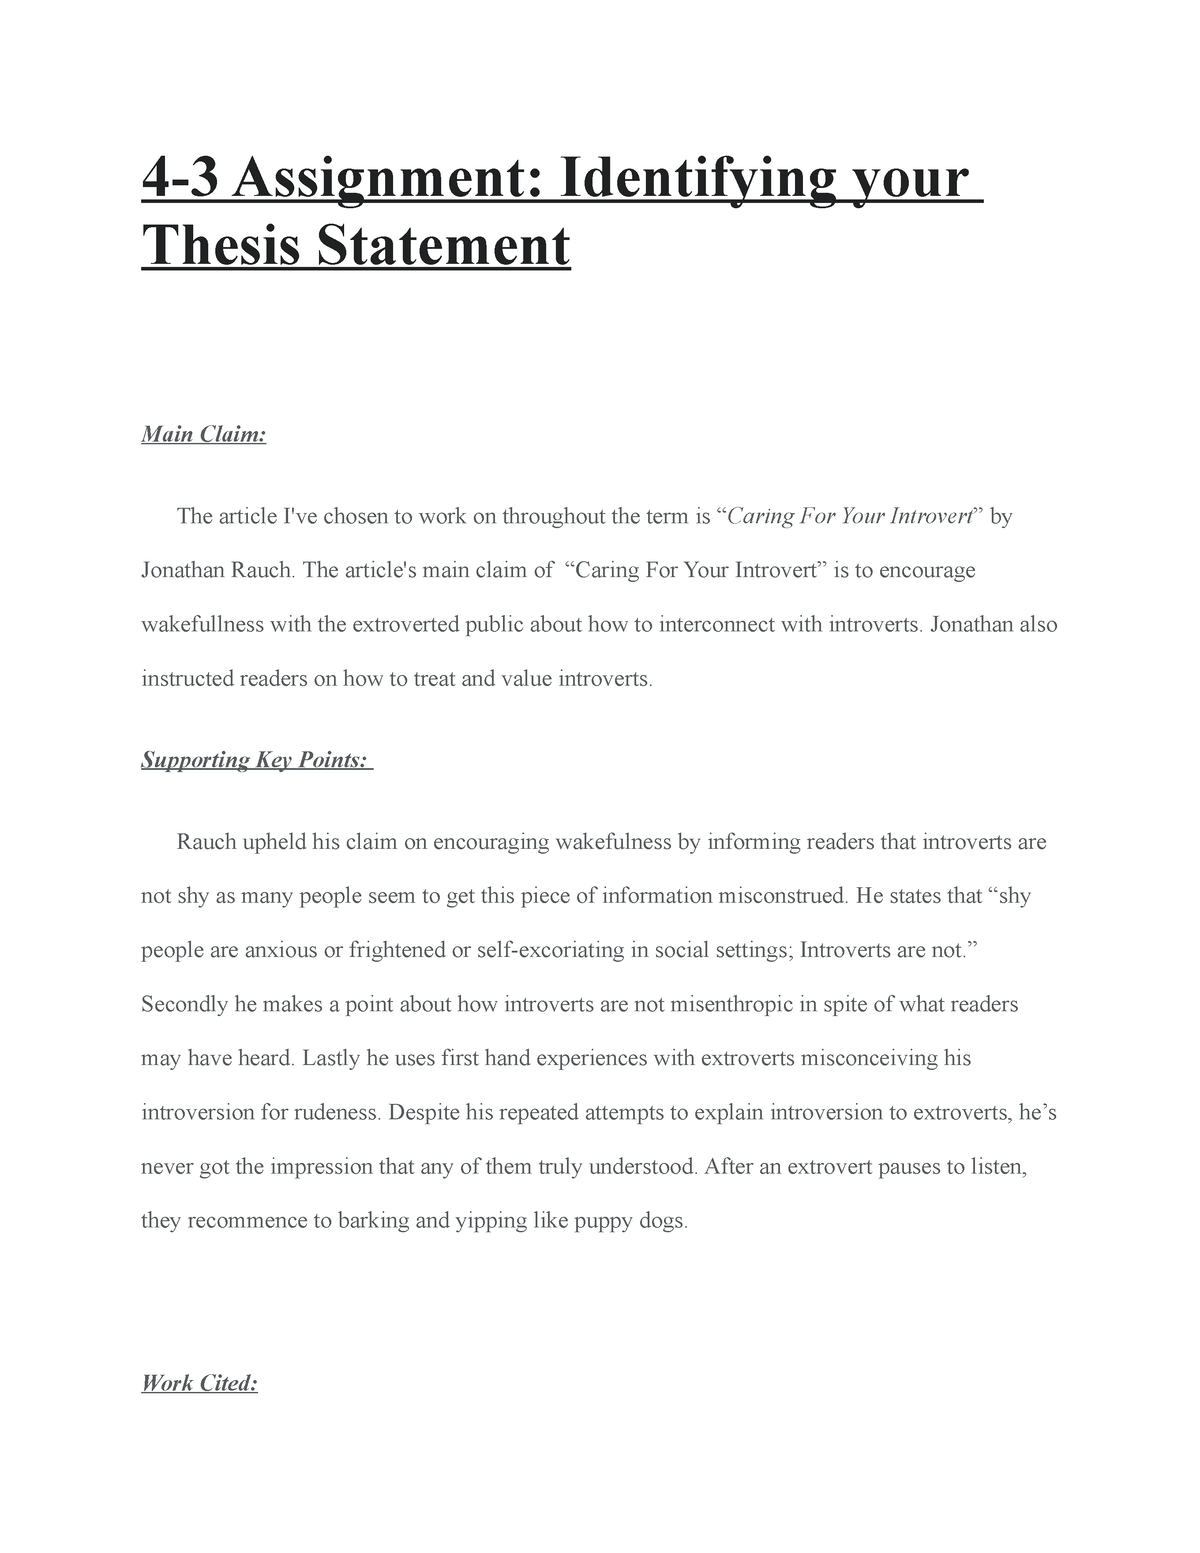 rethinking work thesis statement